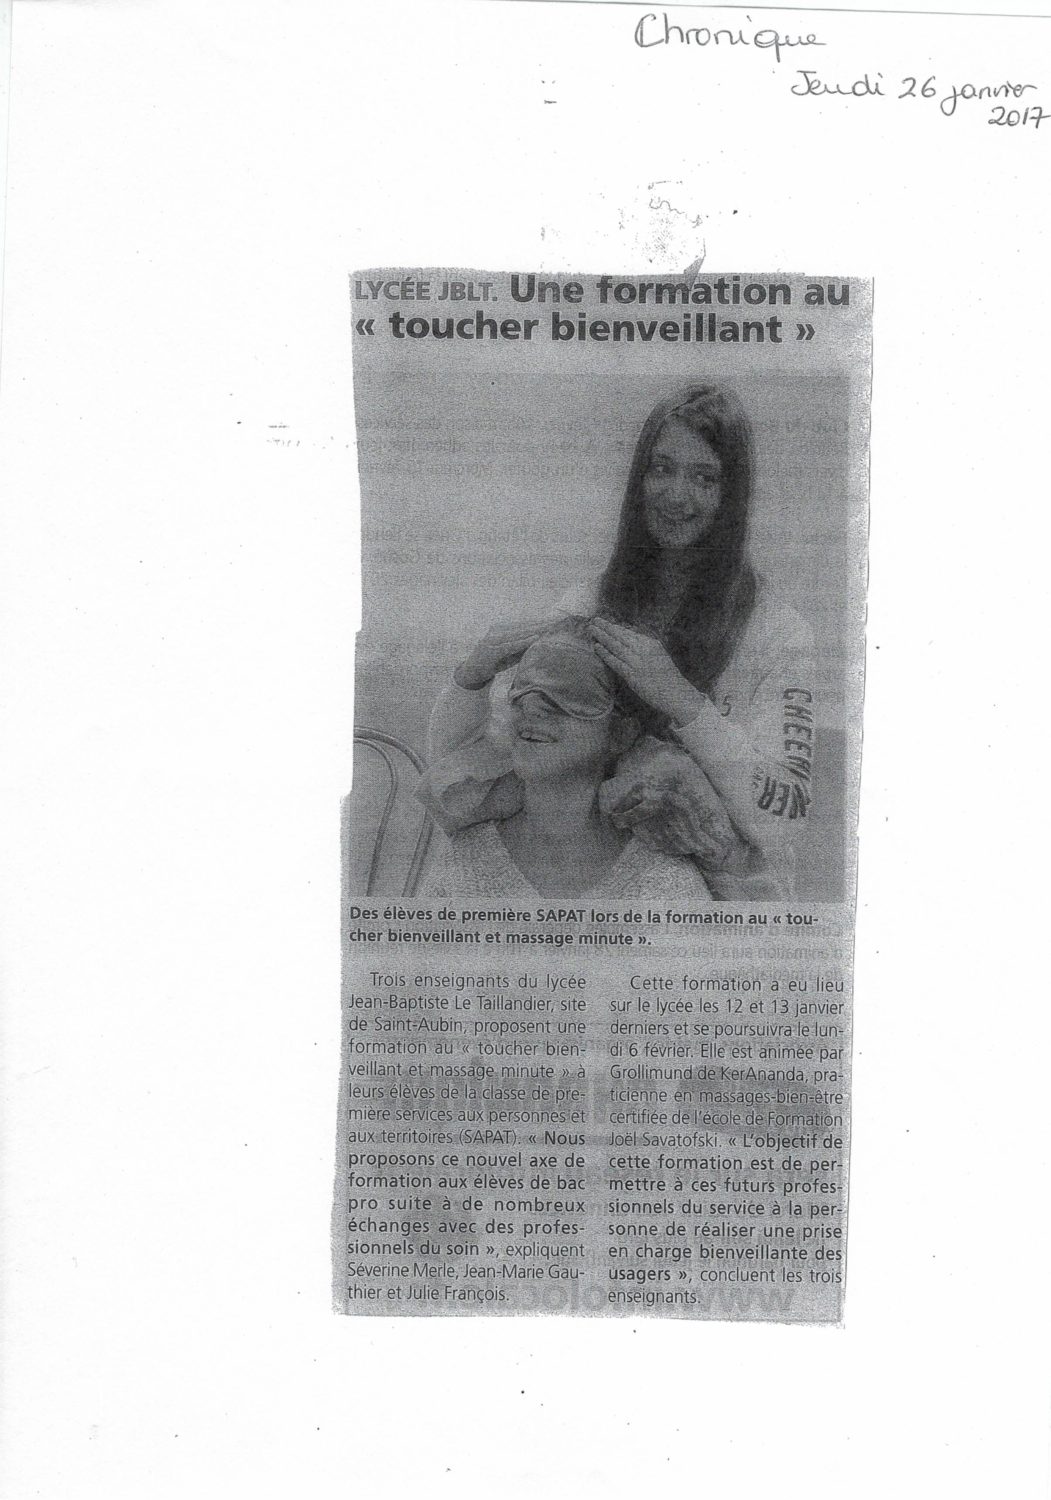 Article formation massage Juliette Grollimund en Lycée professionnel